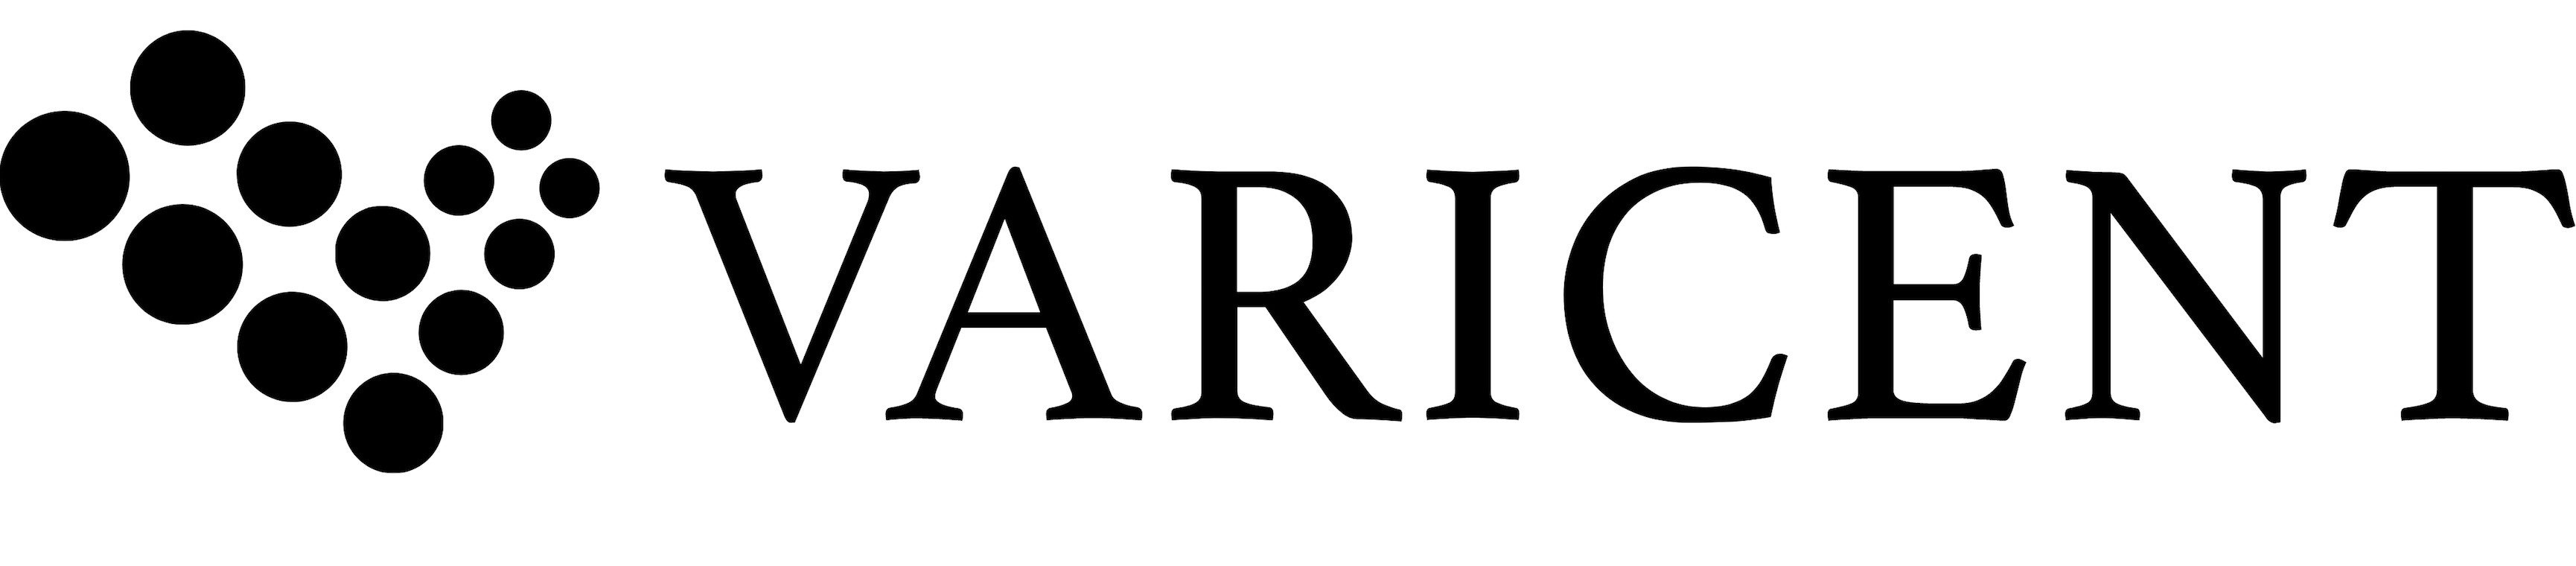 Varicent logo